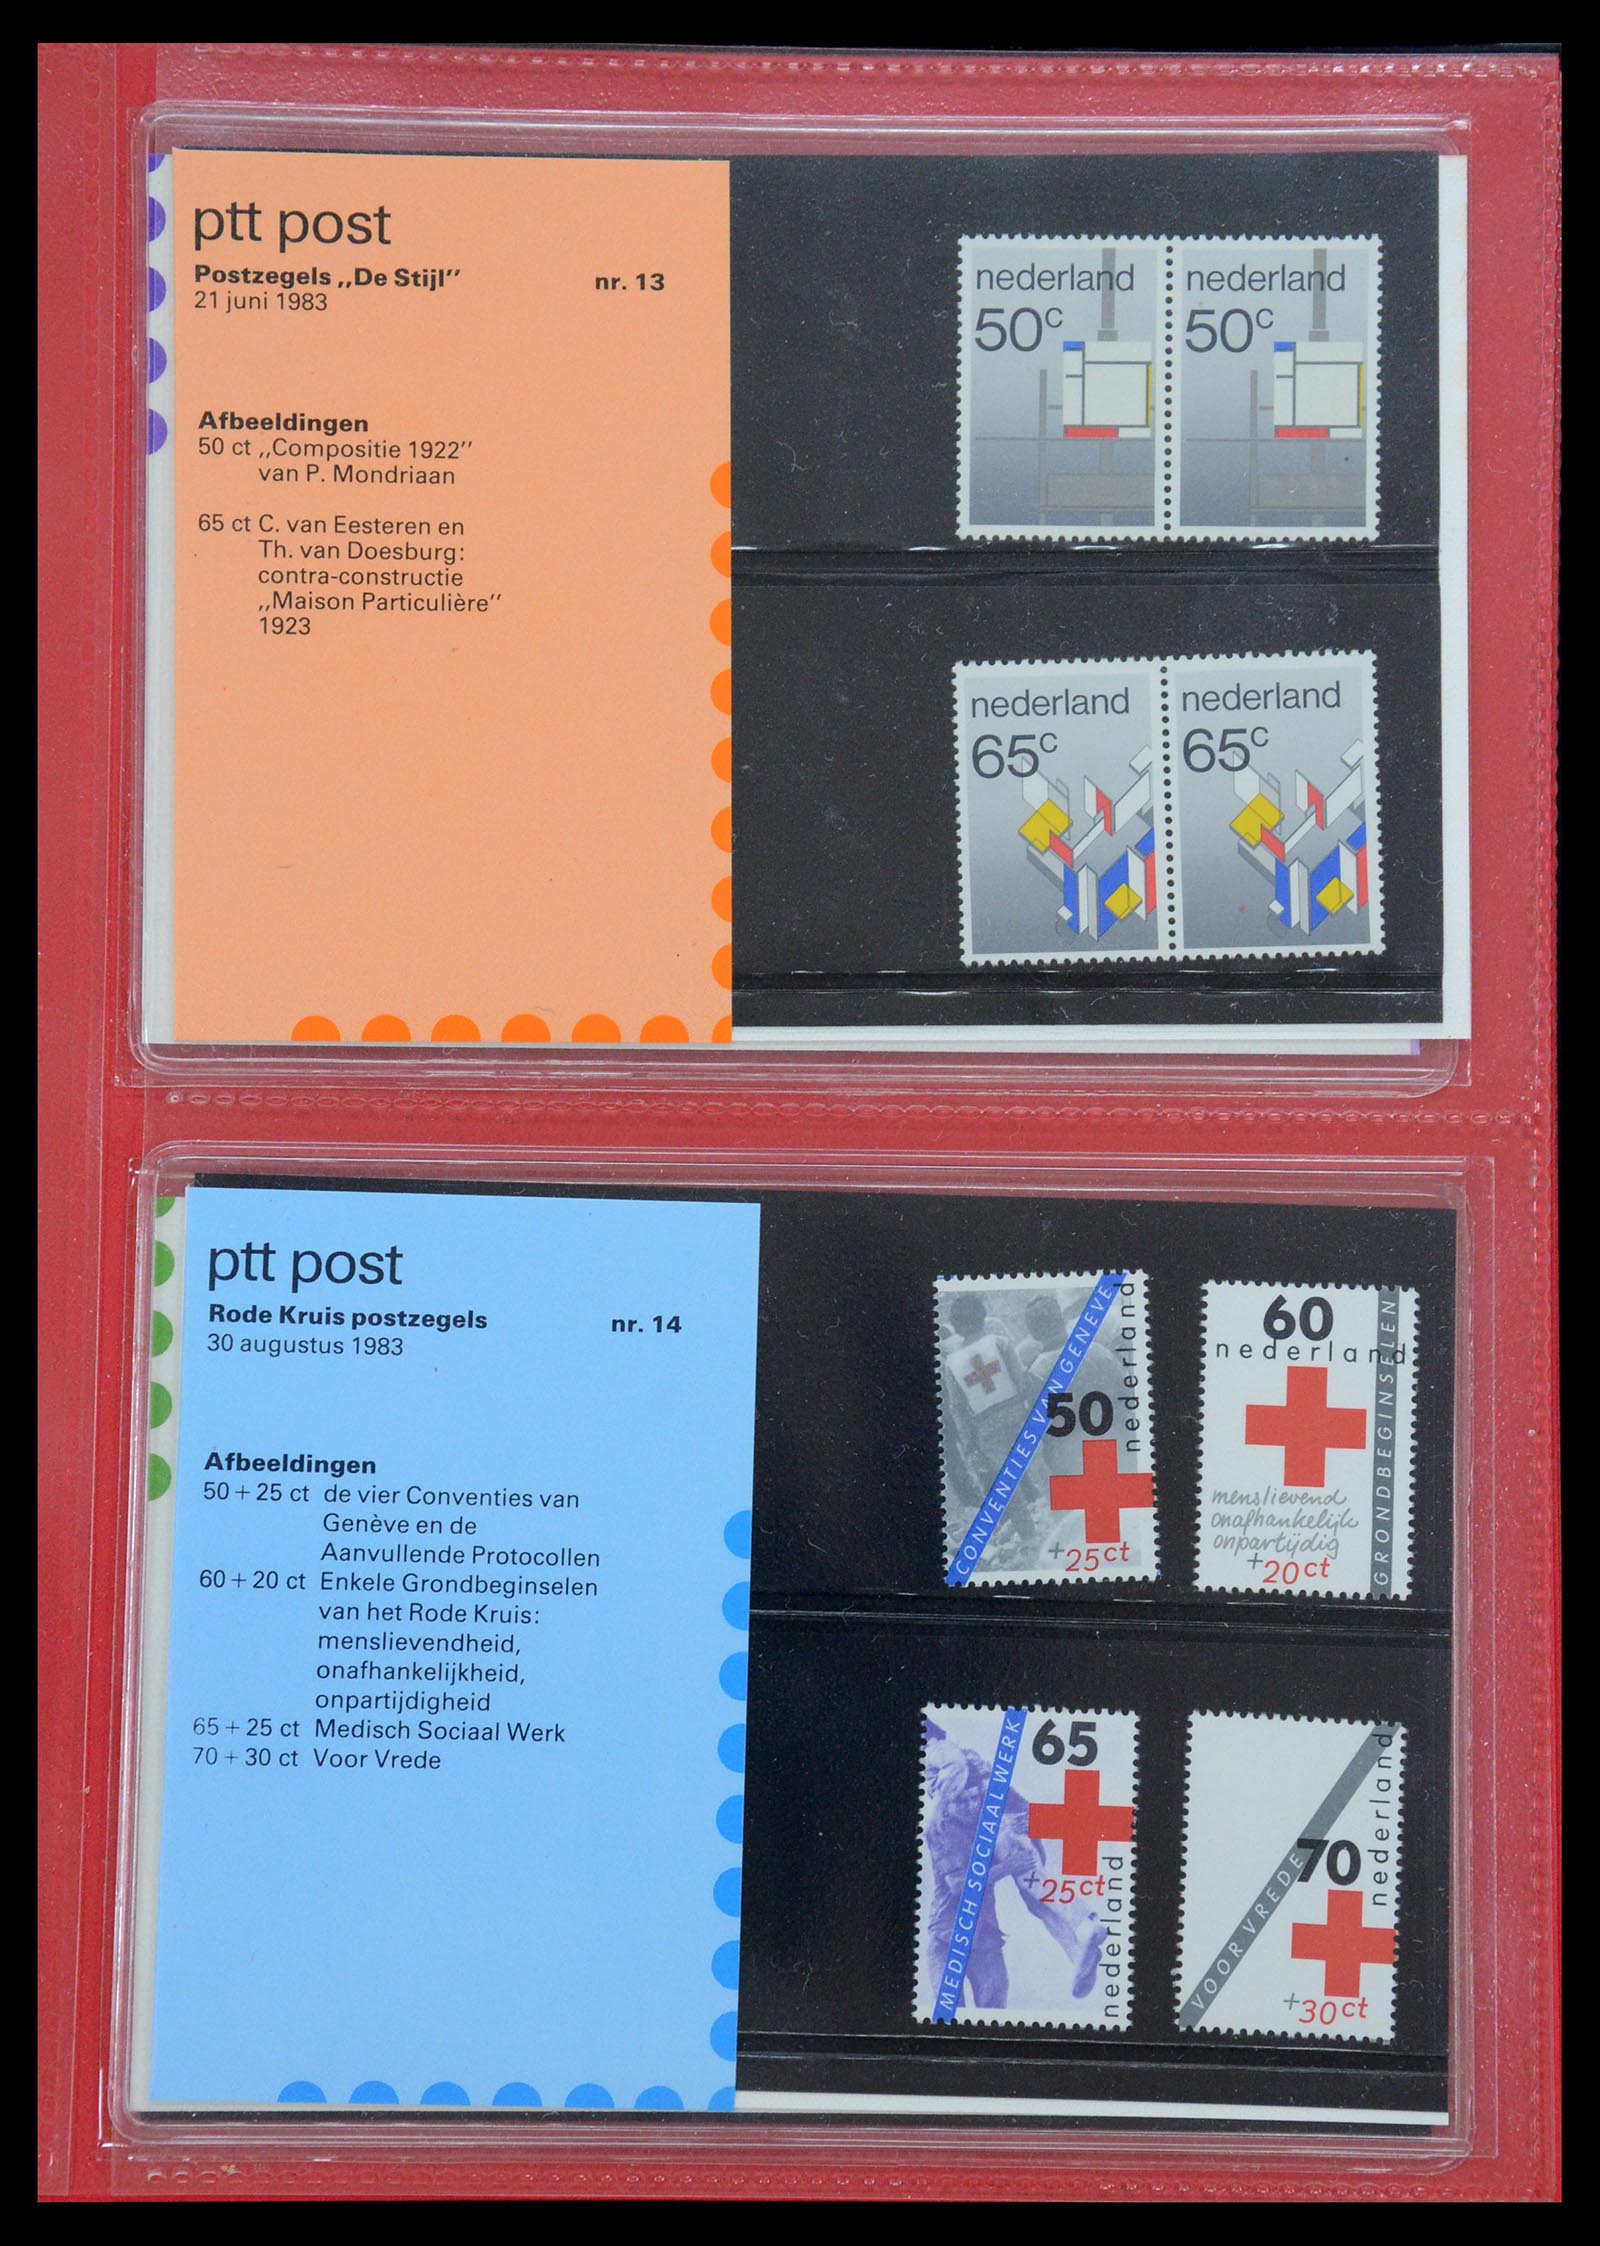 35692 007 - Stamp Collection 35692 Netherlands presentation packs 1982-2021!!